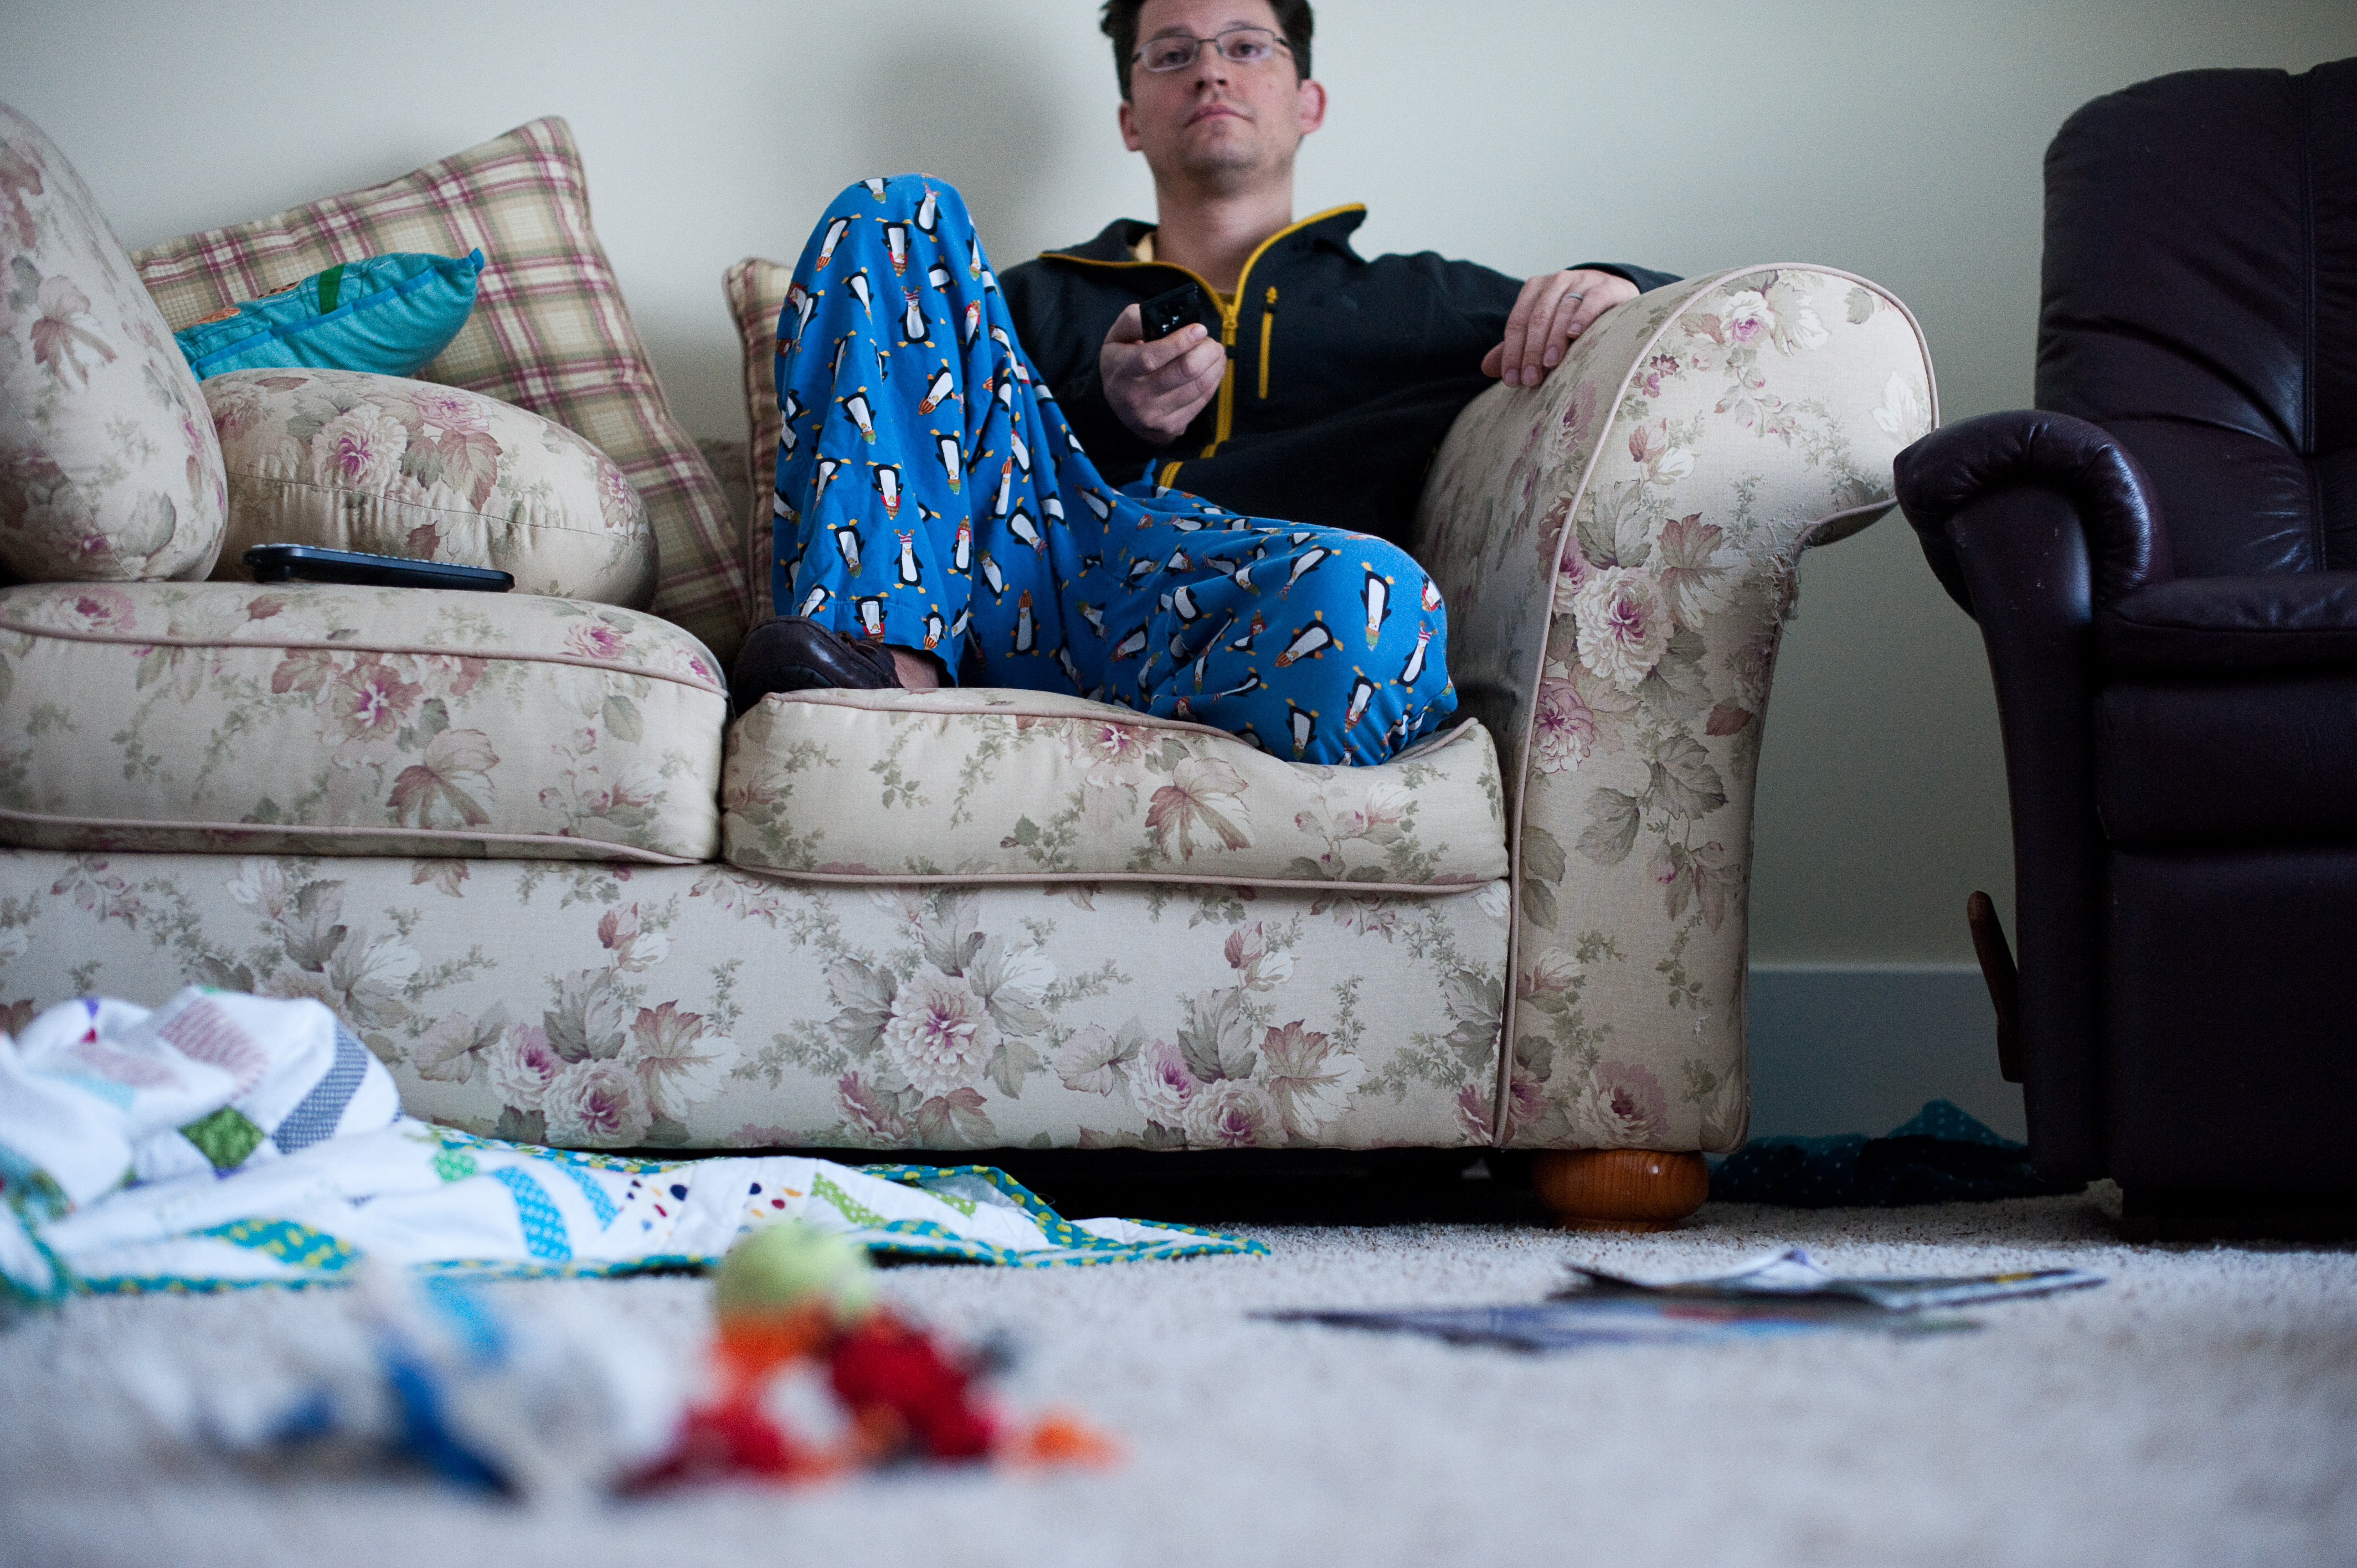 Ein fauler Mann, der vor dem Fernseher sitzt und ein unordentliches Haus hat | Quelle: Getty Images